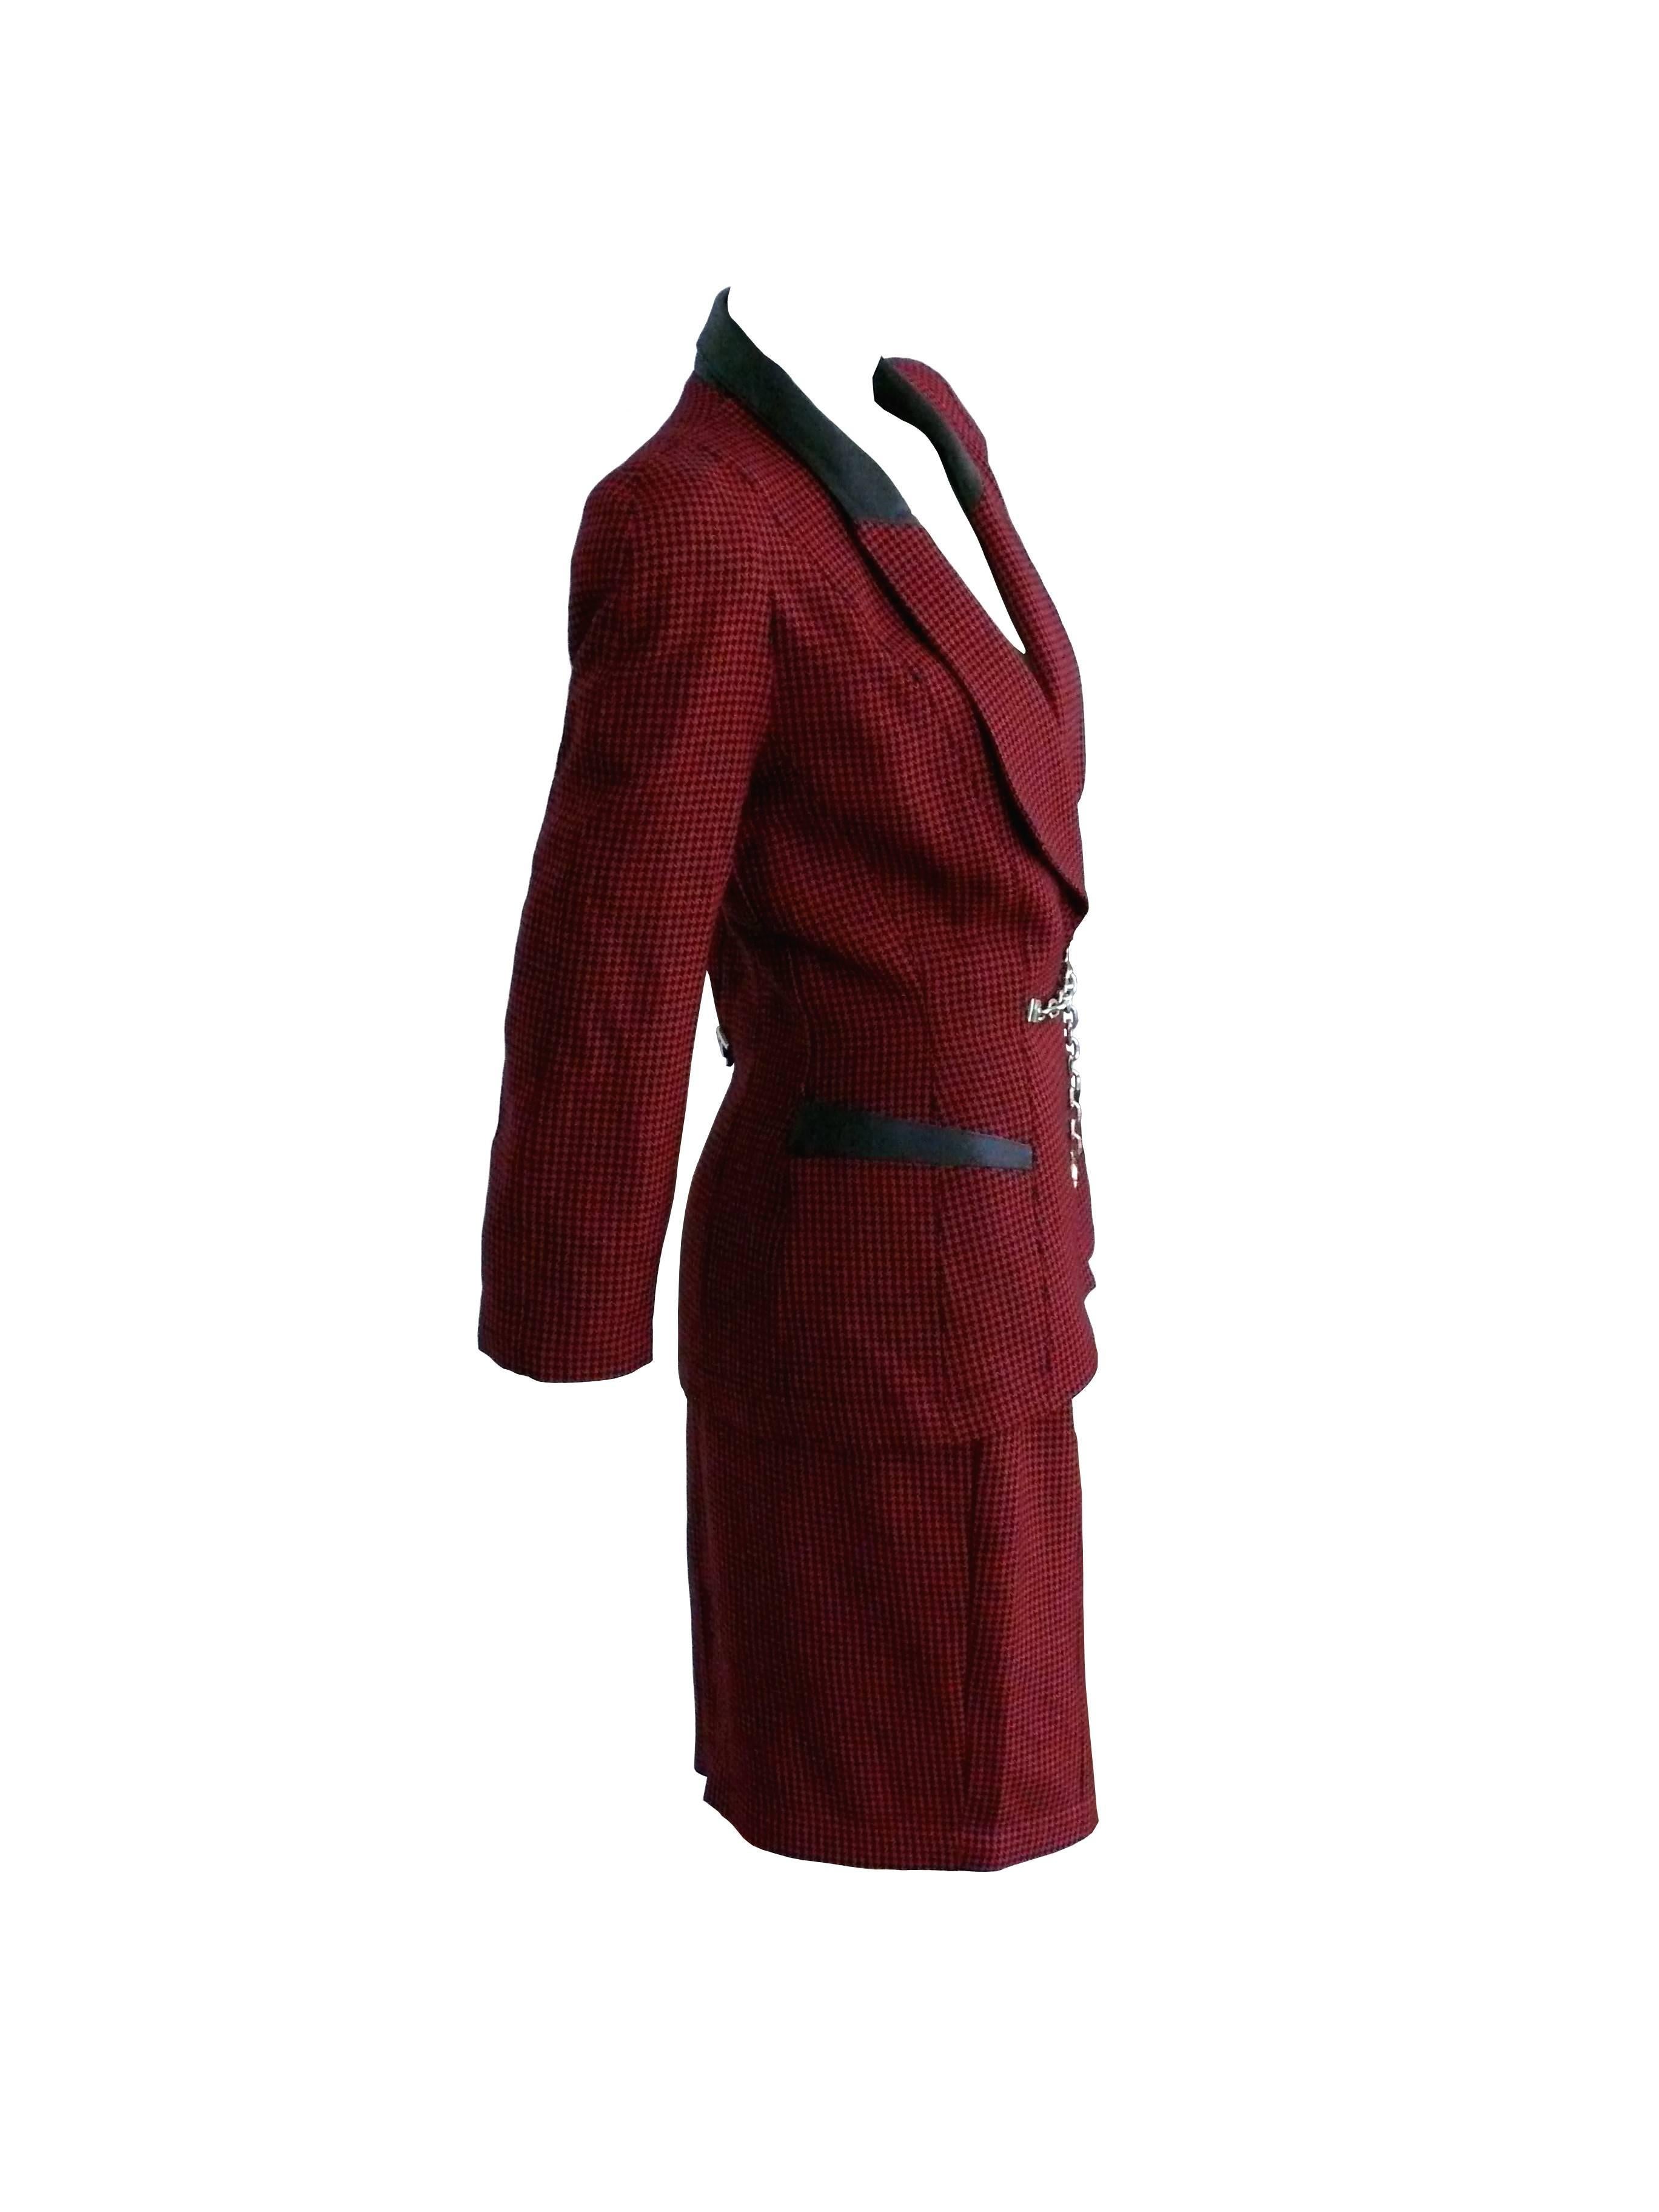 THIERRY MUGLER Vintage-Klassiker aus den 1940er Jahren: Rot-schwarzer Wollrock mit Hahnentrittmuster, Leder- und Kettendetails.

Die Jacke hat Schulterpolster und schwarze Lederdetails an den Revers. 
Zwei Taschen.
Verdeckter